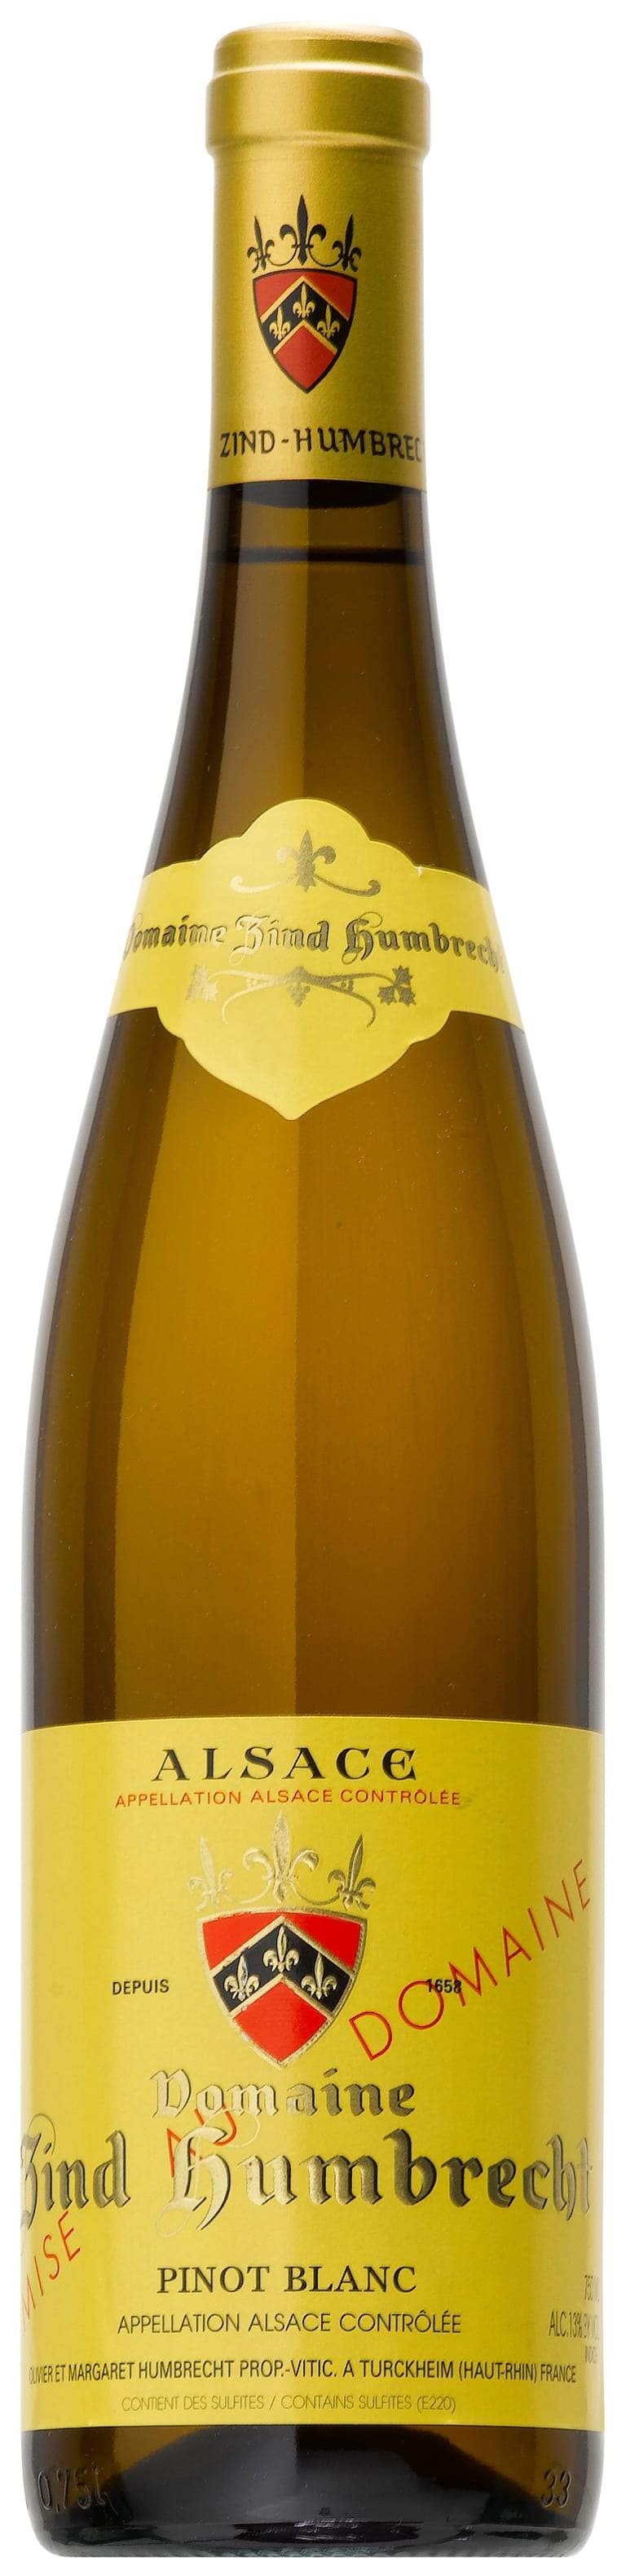 Zind-Humbrecht Pinot Blanc 2016